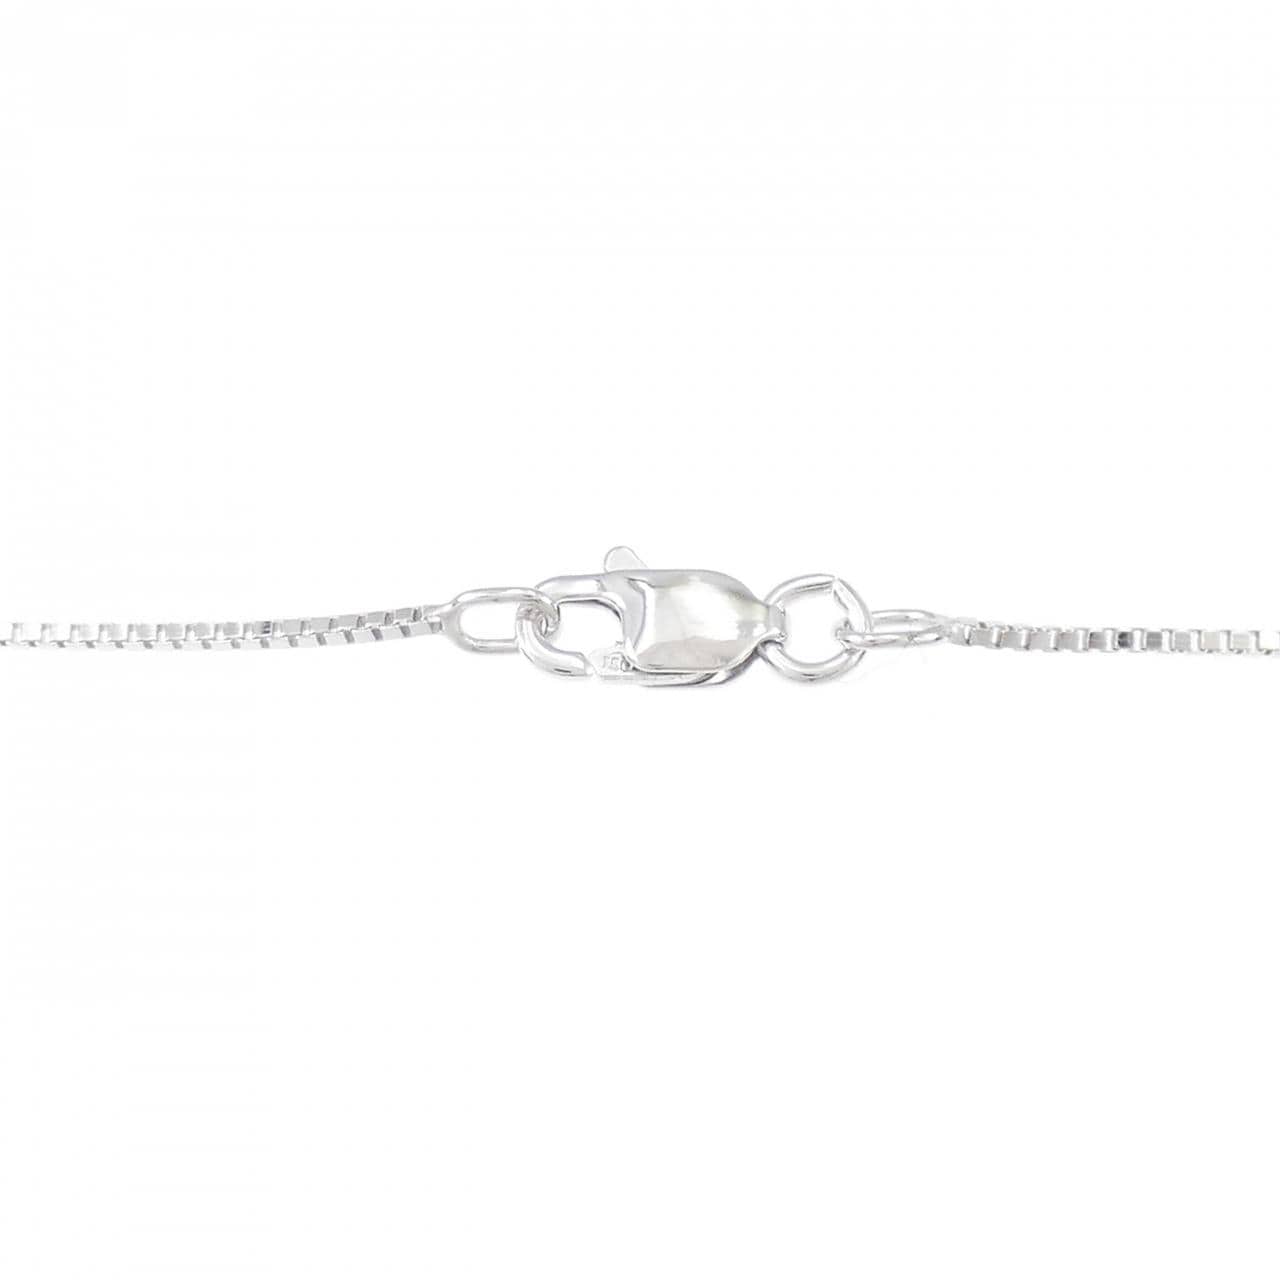 750WG Snowflake Diamond Necklace